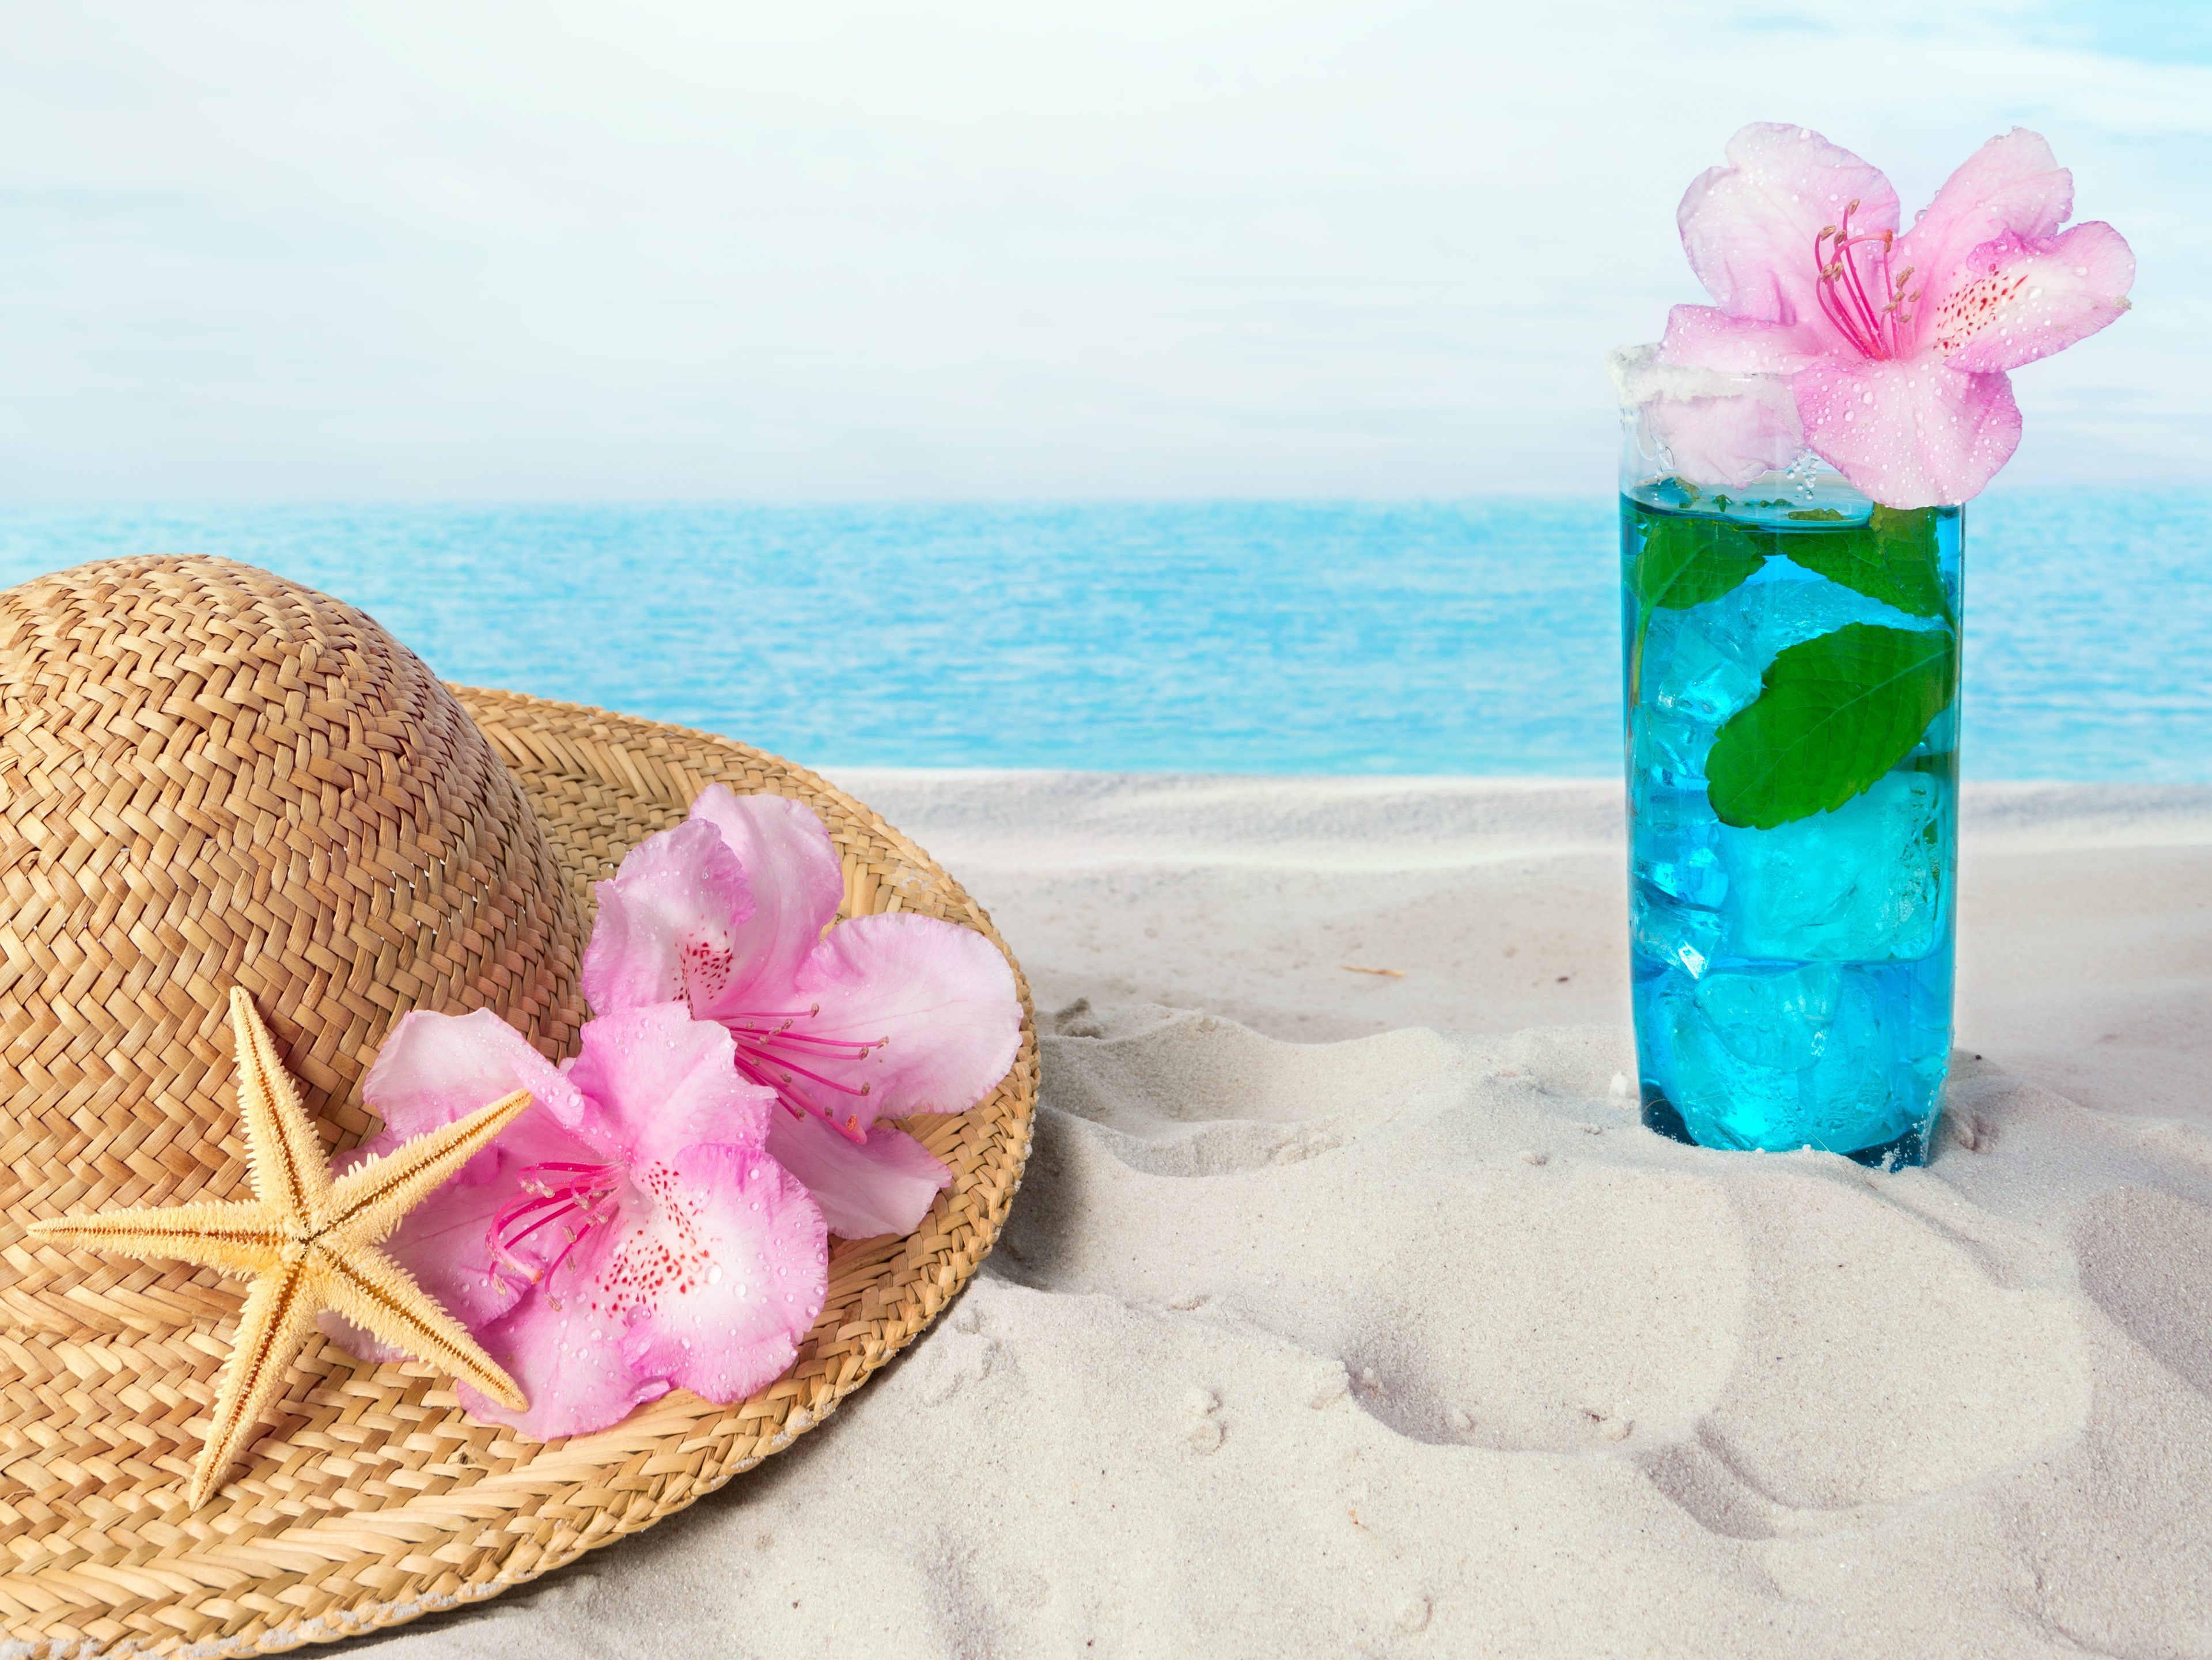 Blue drink on the beach alongside a sunhat and sea shells